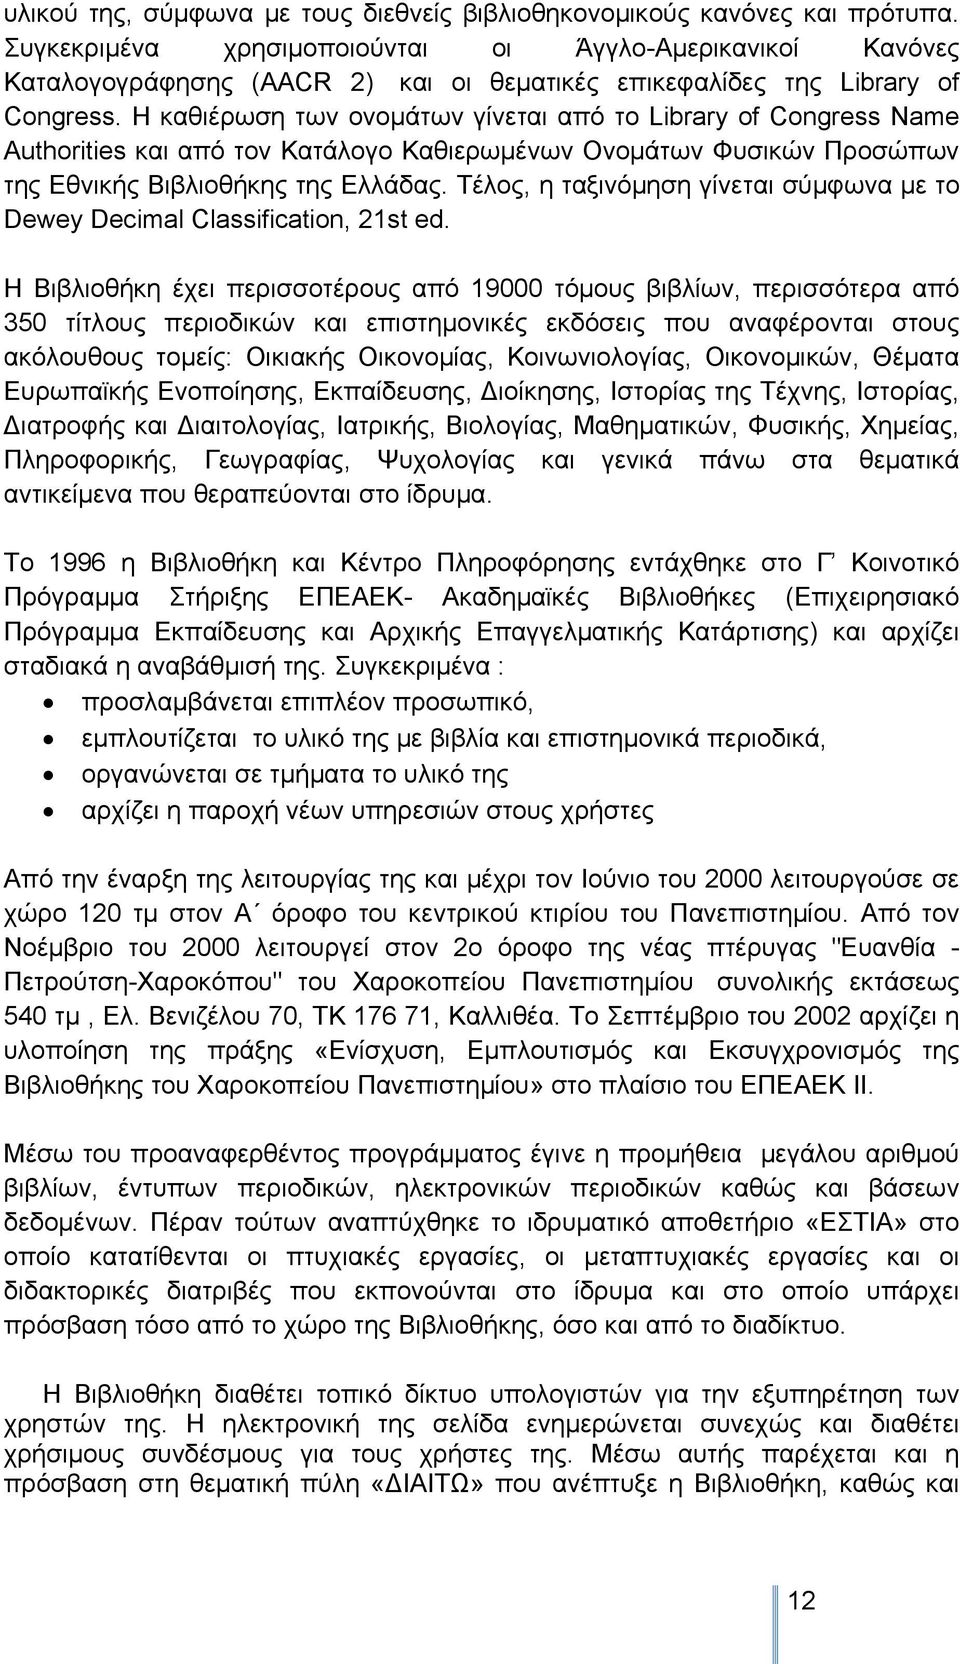 Η καθιέρωση των ονομάτων γίνεται από το Library of Congress Name Authorities και από τον Κατάλογο Καθιερωμένων Ονομάτων Φυσικών Προσώπων της Εθνικής Βιβλιοθήκης της Ελλάδας.